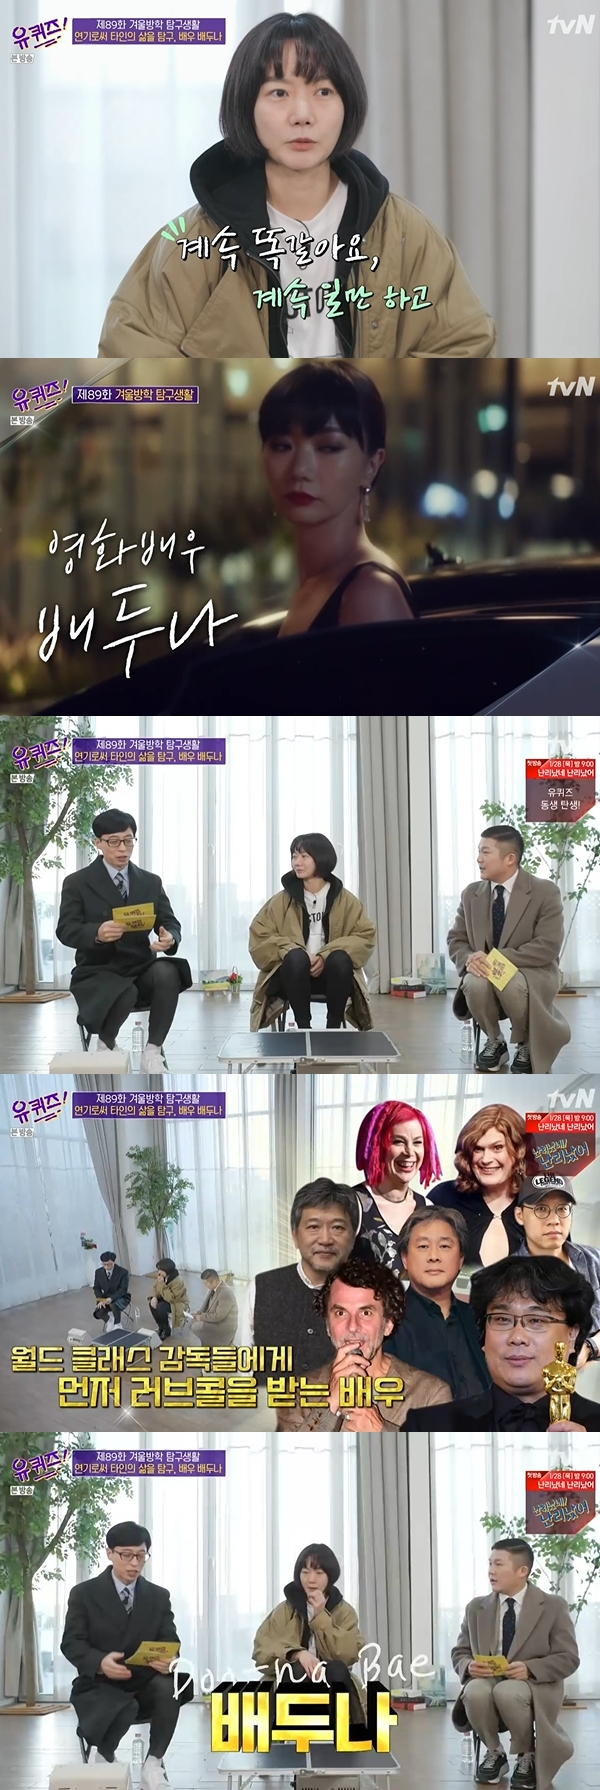 유퀴즈 배두나 / 사진=tvN 유퀴즈 온더 블록